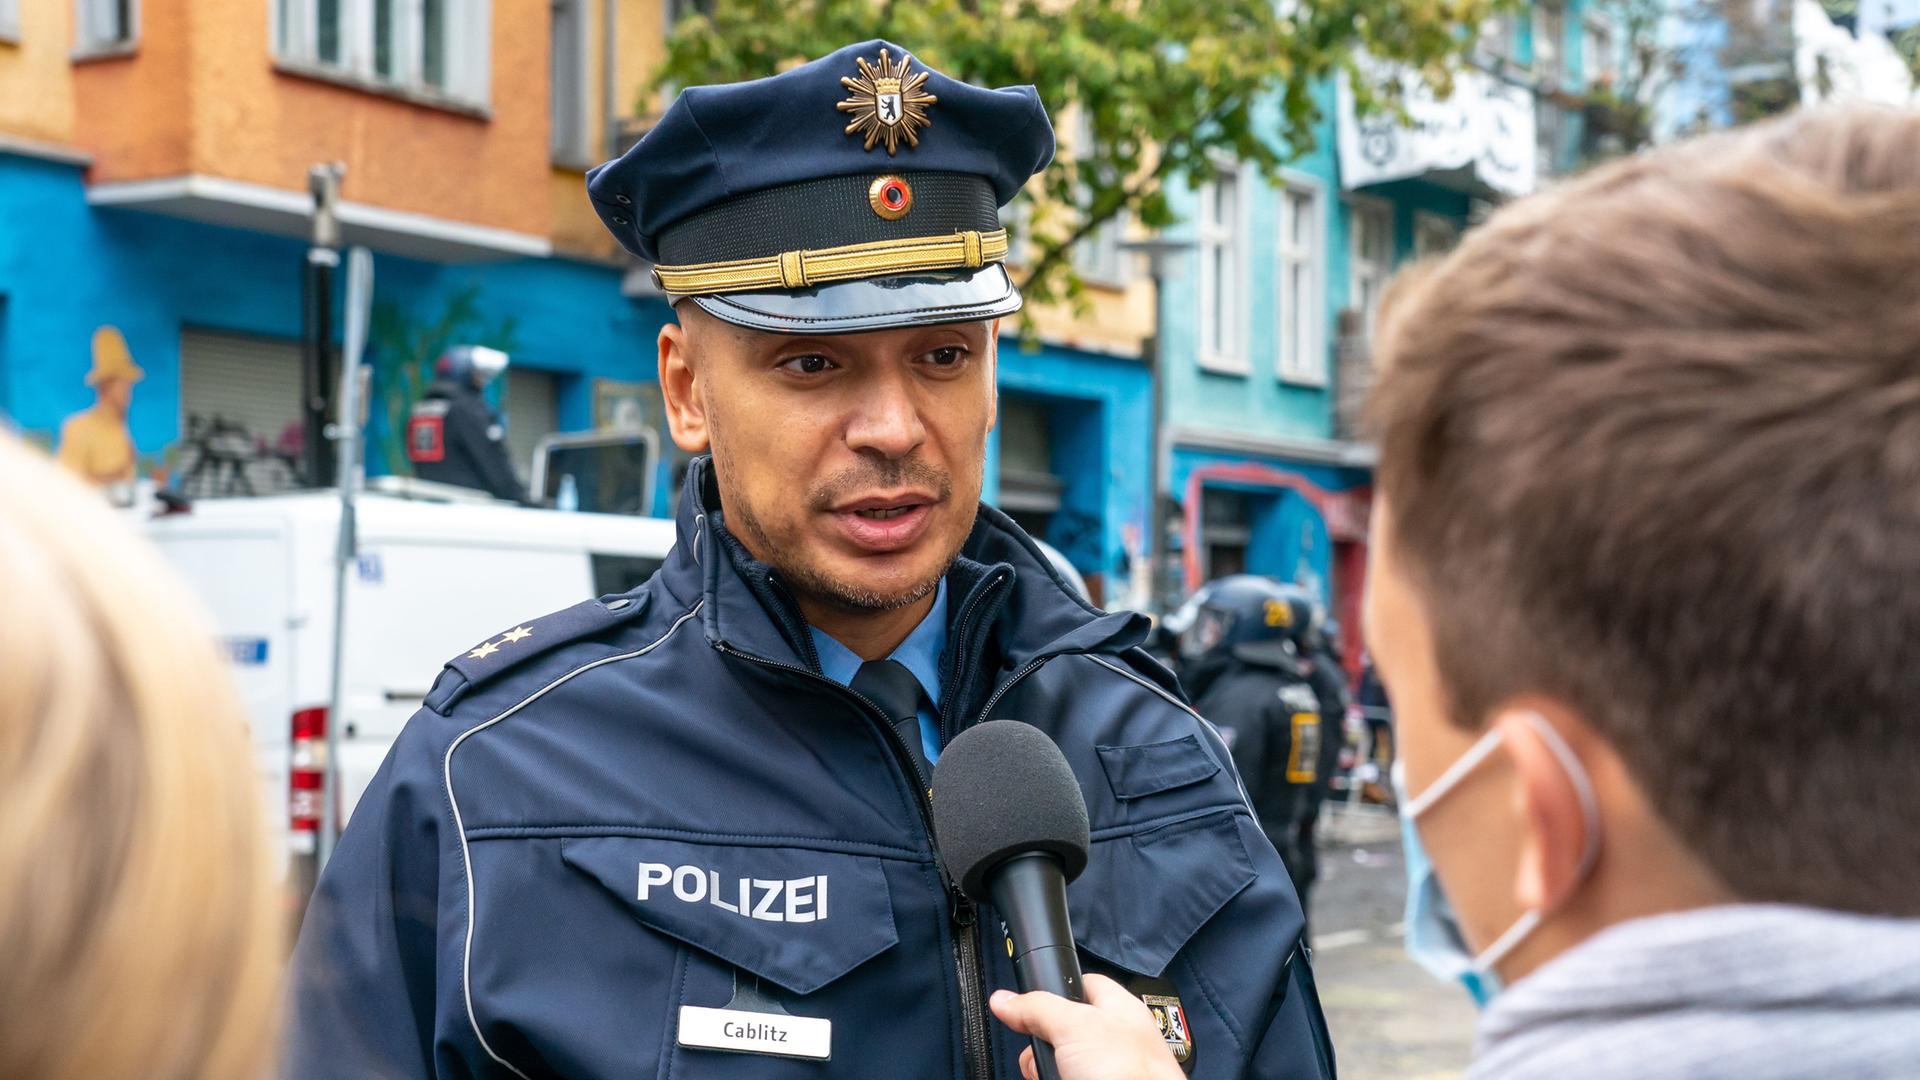 Thilo Calblitz in Polizeiuniform unf mit Polizeimütze auf dem Kopf spricht mit einem anderen Menschen, der ein Mikrofon in der Hand hält. Diese Person ist von hinten zu sehen.